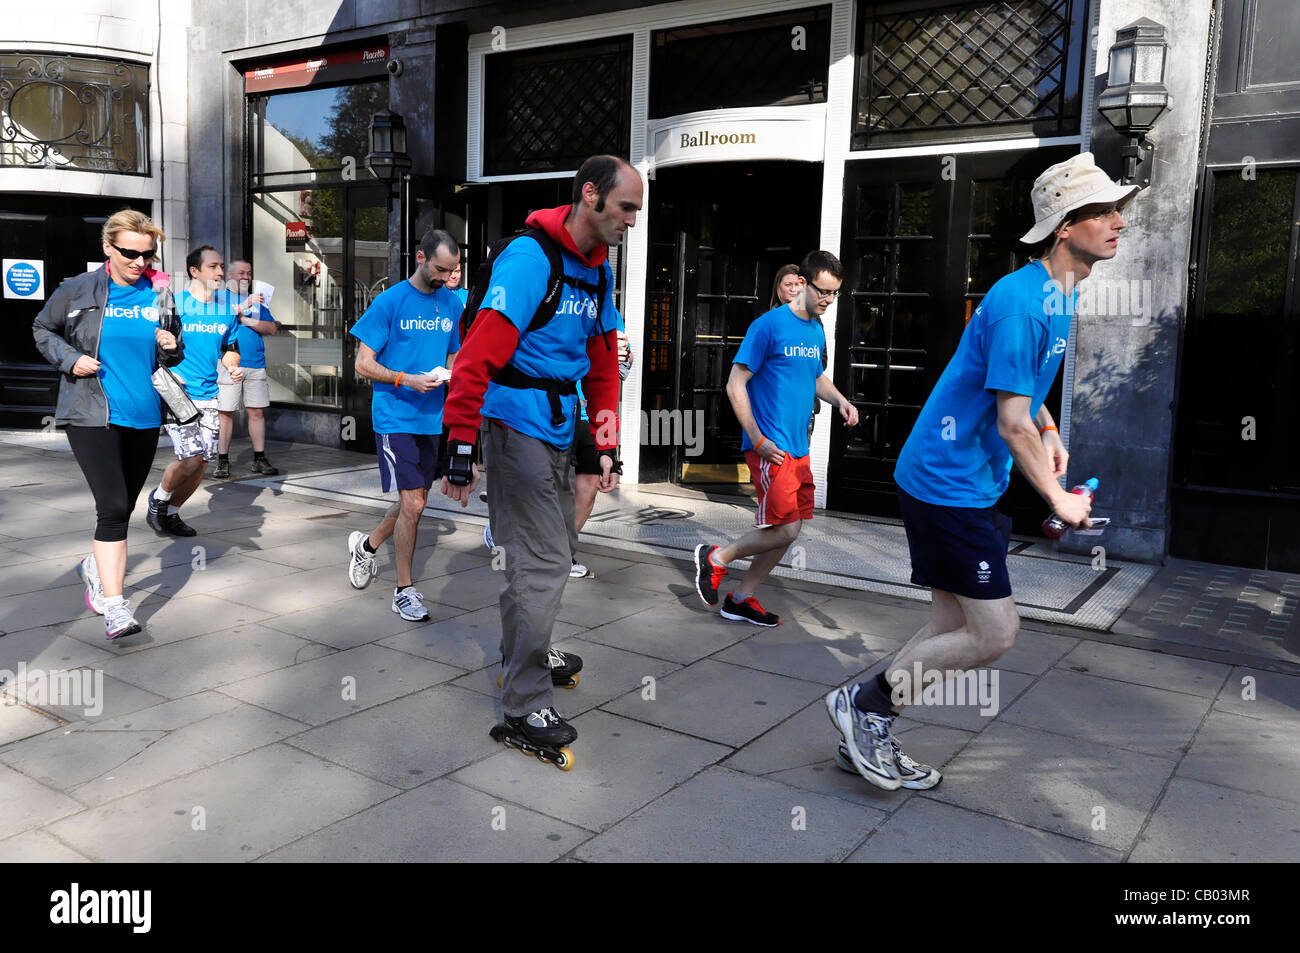 LONDON, UK, Samstag, 12. Mai 2012. Mitarbeiter und Führungskräfte von Starwood London Hotels im Zentrum laufen, zu Fuß oder mit dem Fahrrad eine halbe Marathon oder volle Marathon um Geld für UNICEF zu sammeln. Ziel war es, mindestens 5000 Pfund für ein UNICEF-Bildungsprogramm in Äthiopien zu erhöhen. Stockfoto